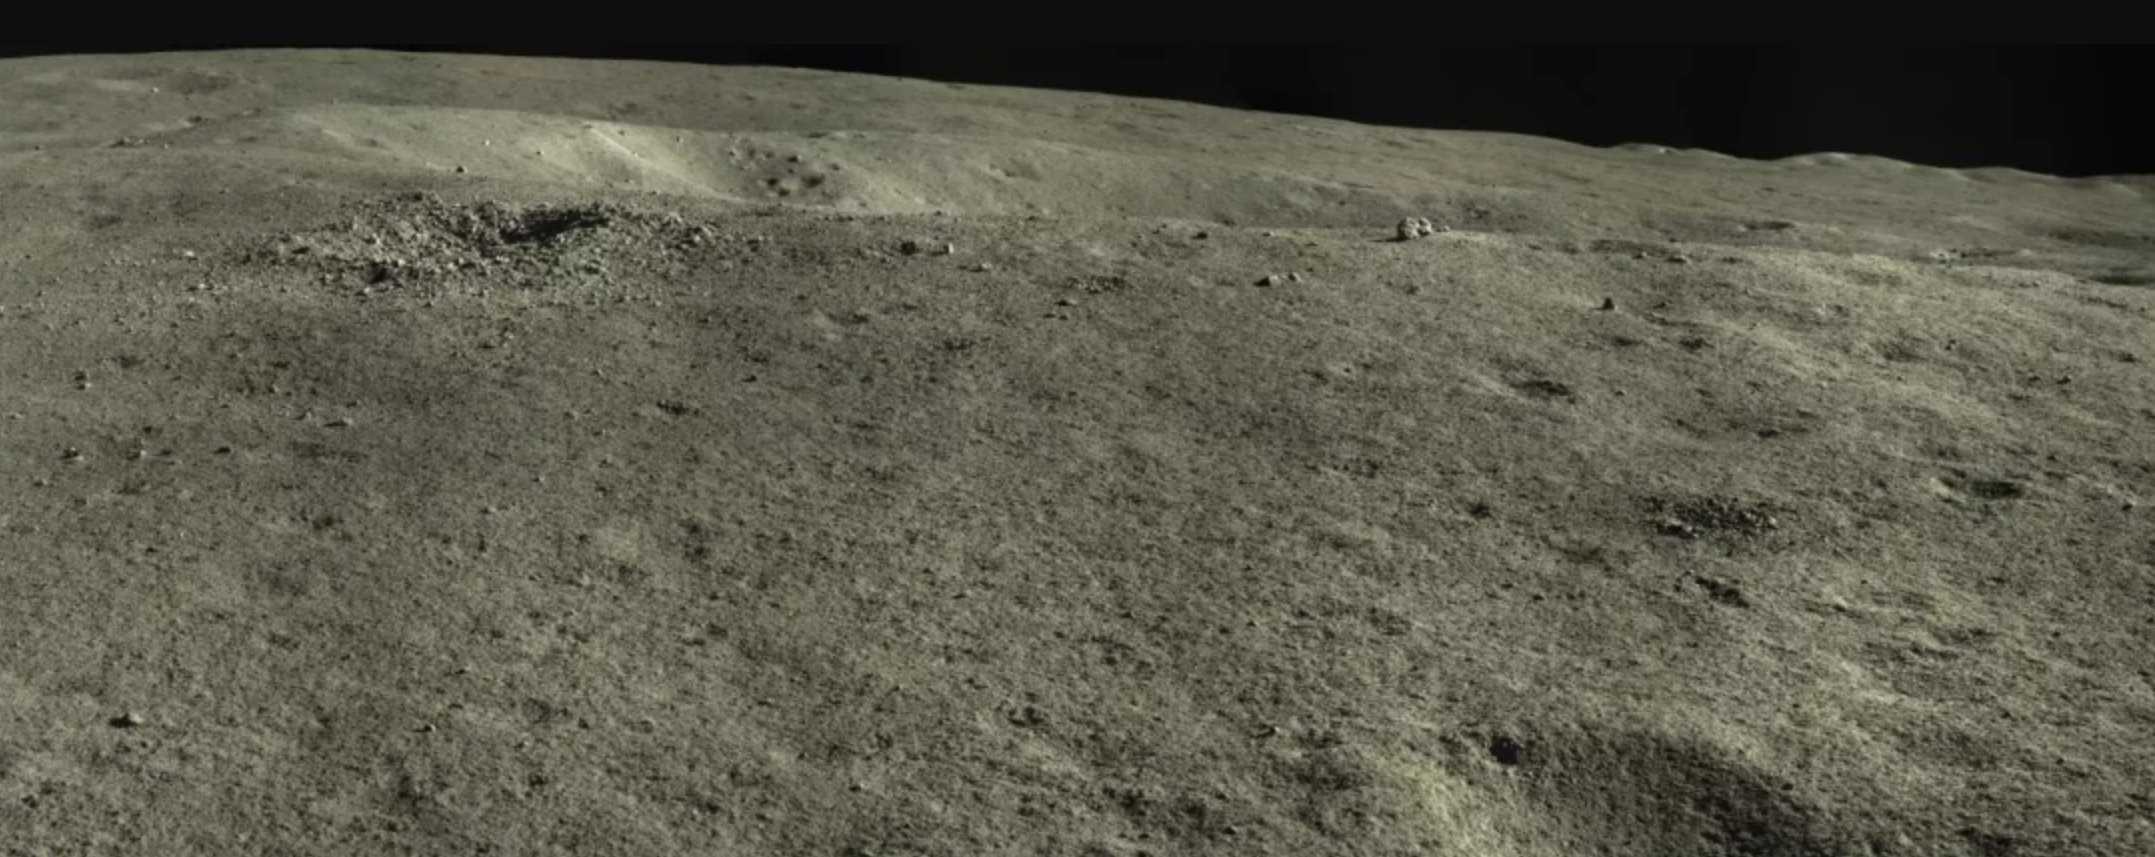 Исследователи выяснили происхождение «хижины на Луне»